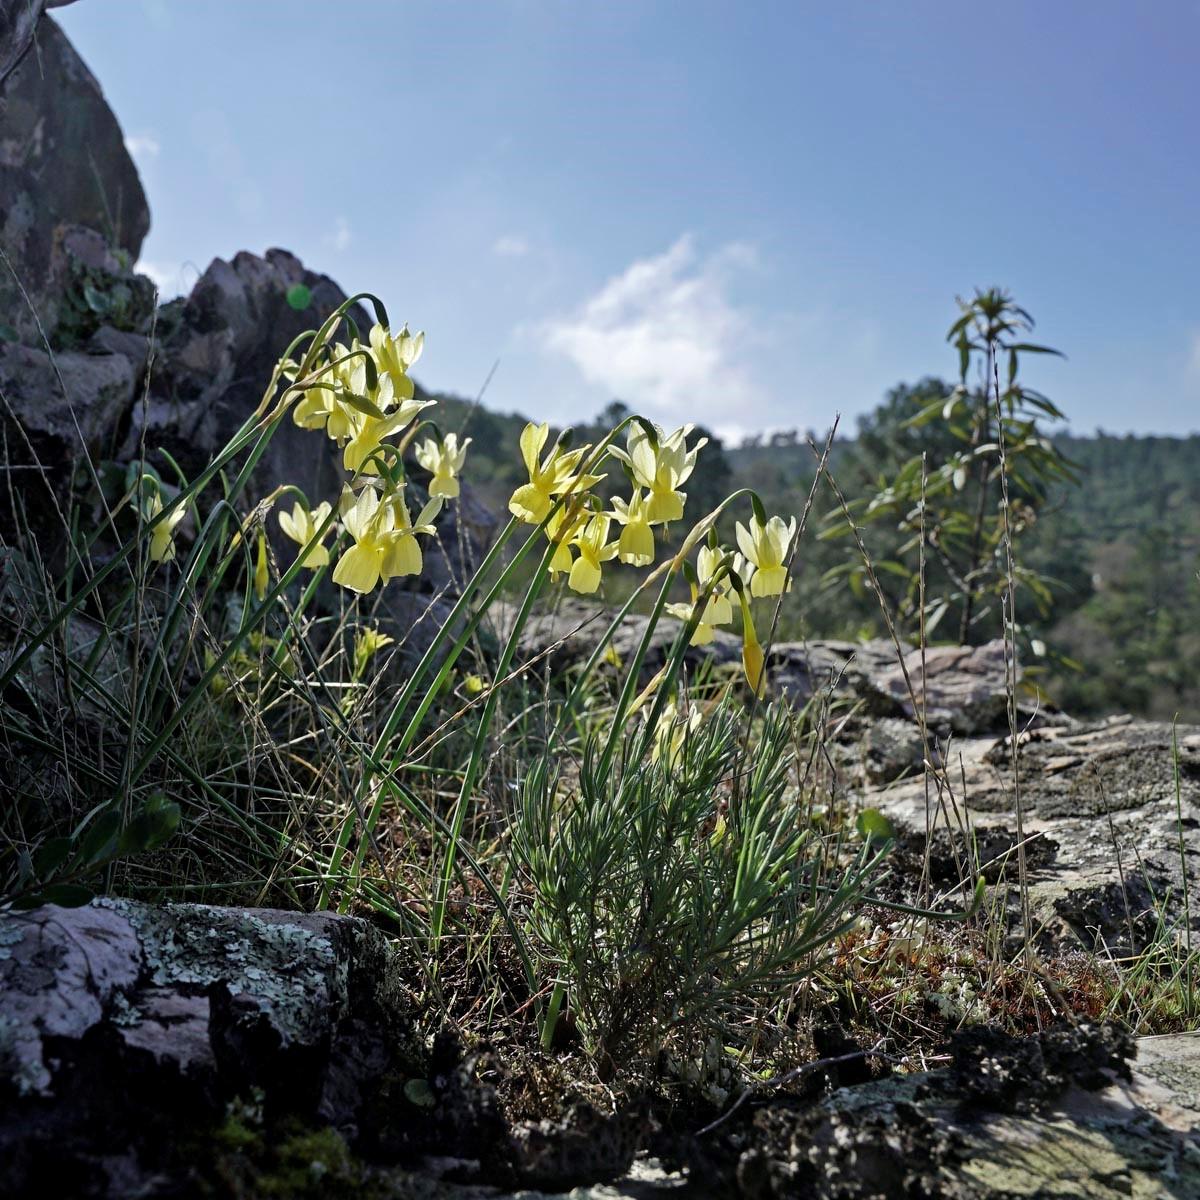 The Daffodil in Spain